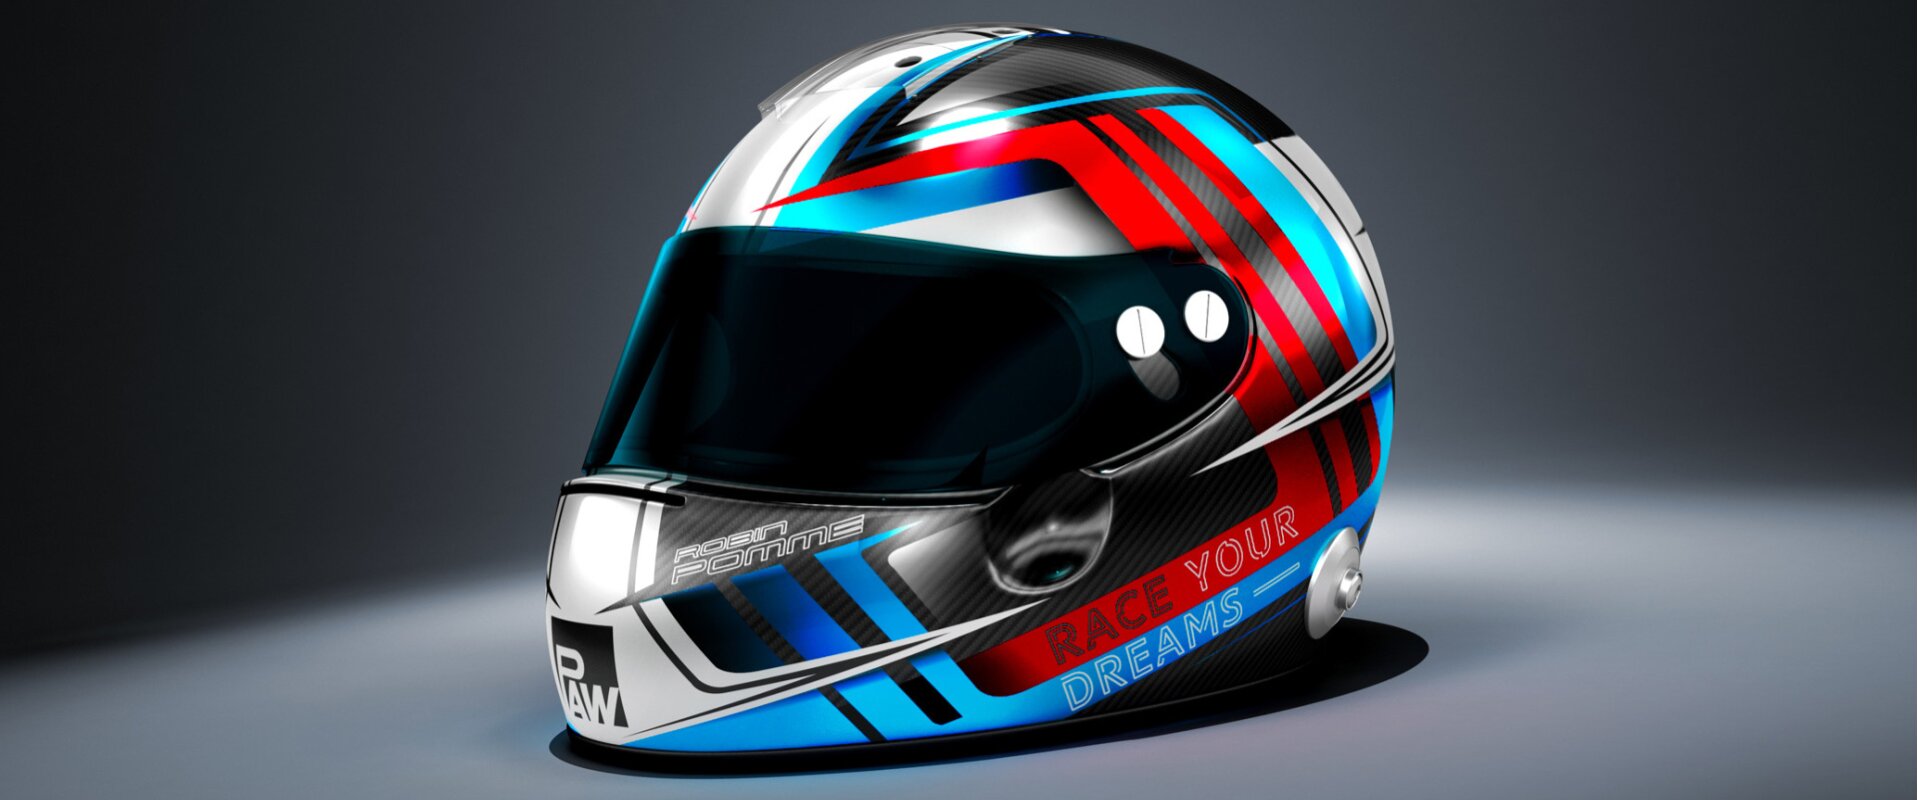 porsche cup racing driver helmet design